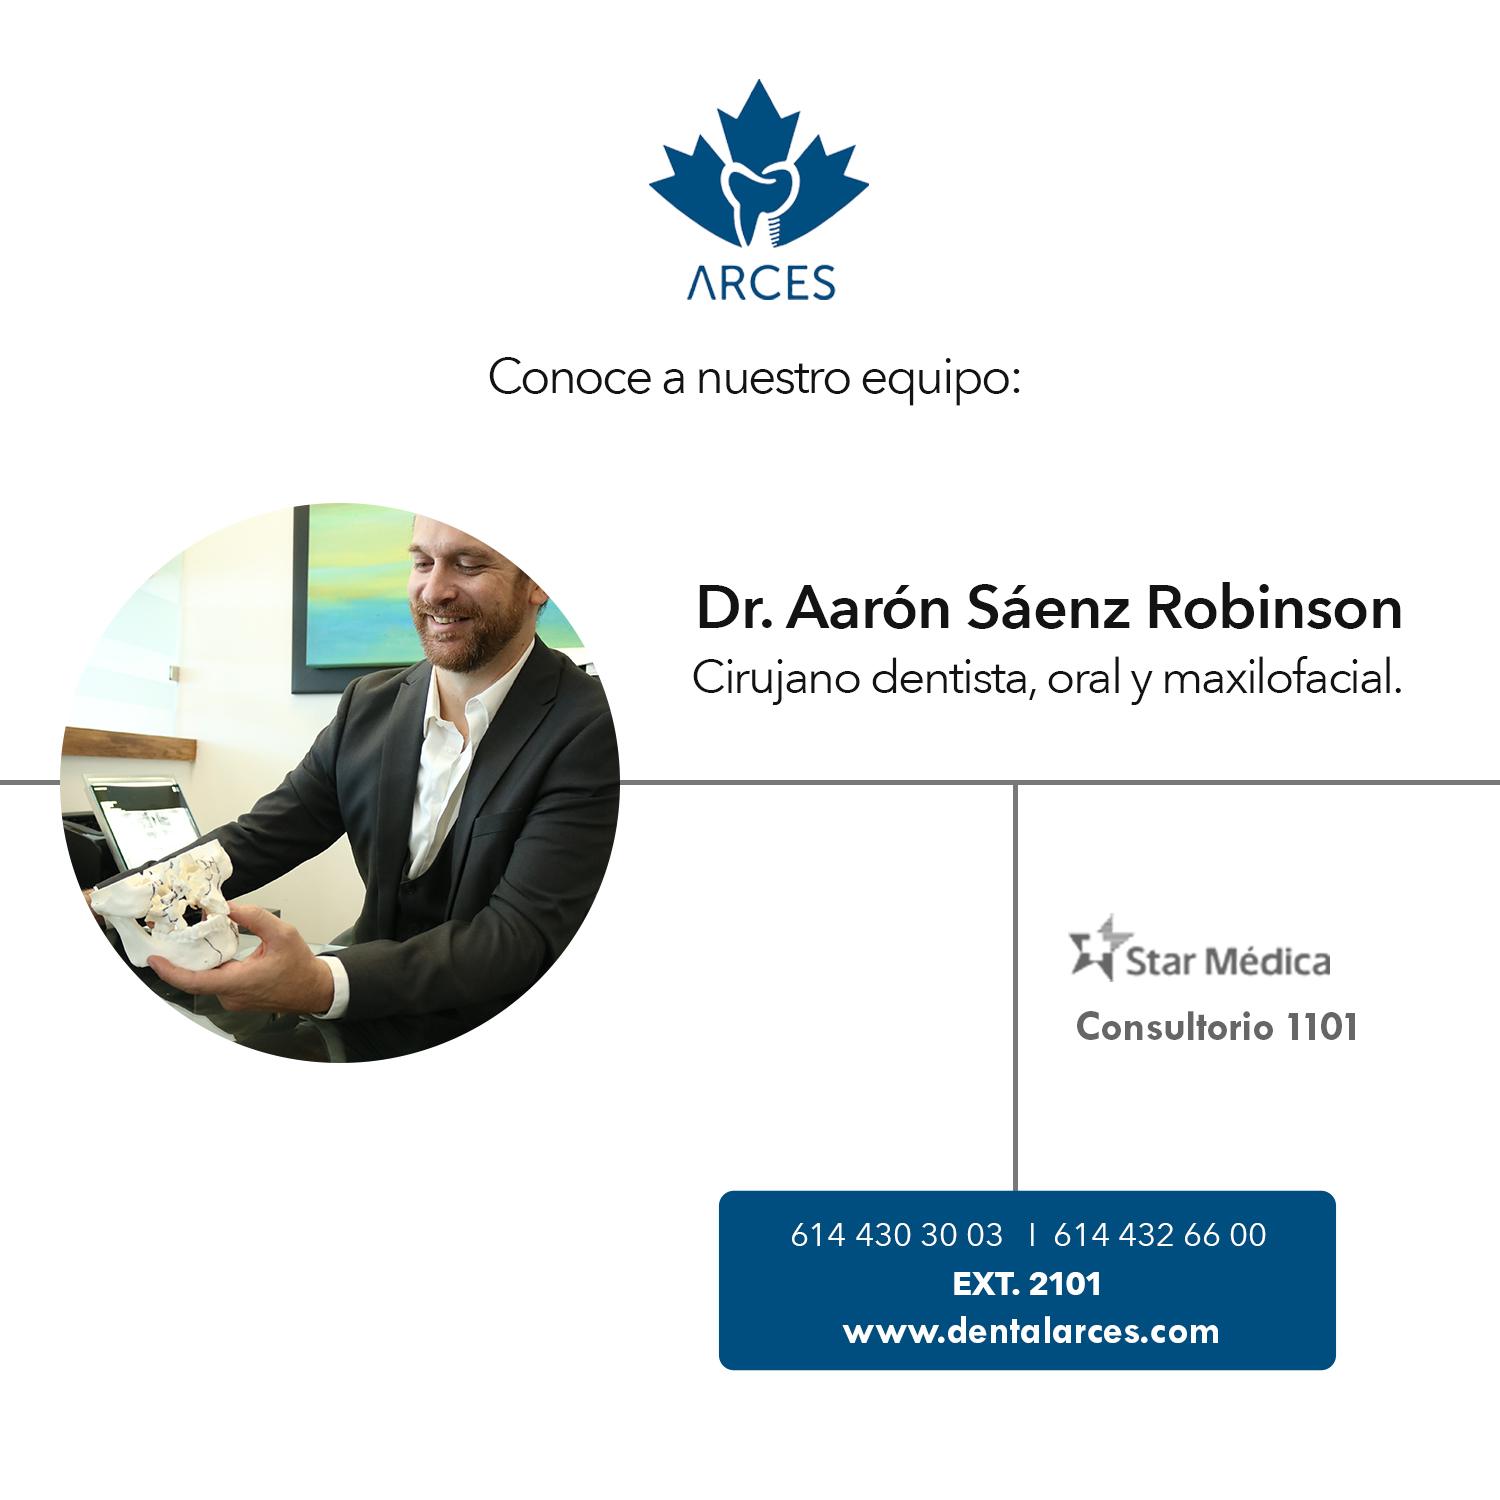 Dr. Aaron Sáenz Robinson